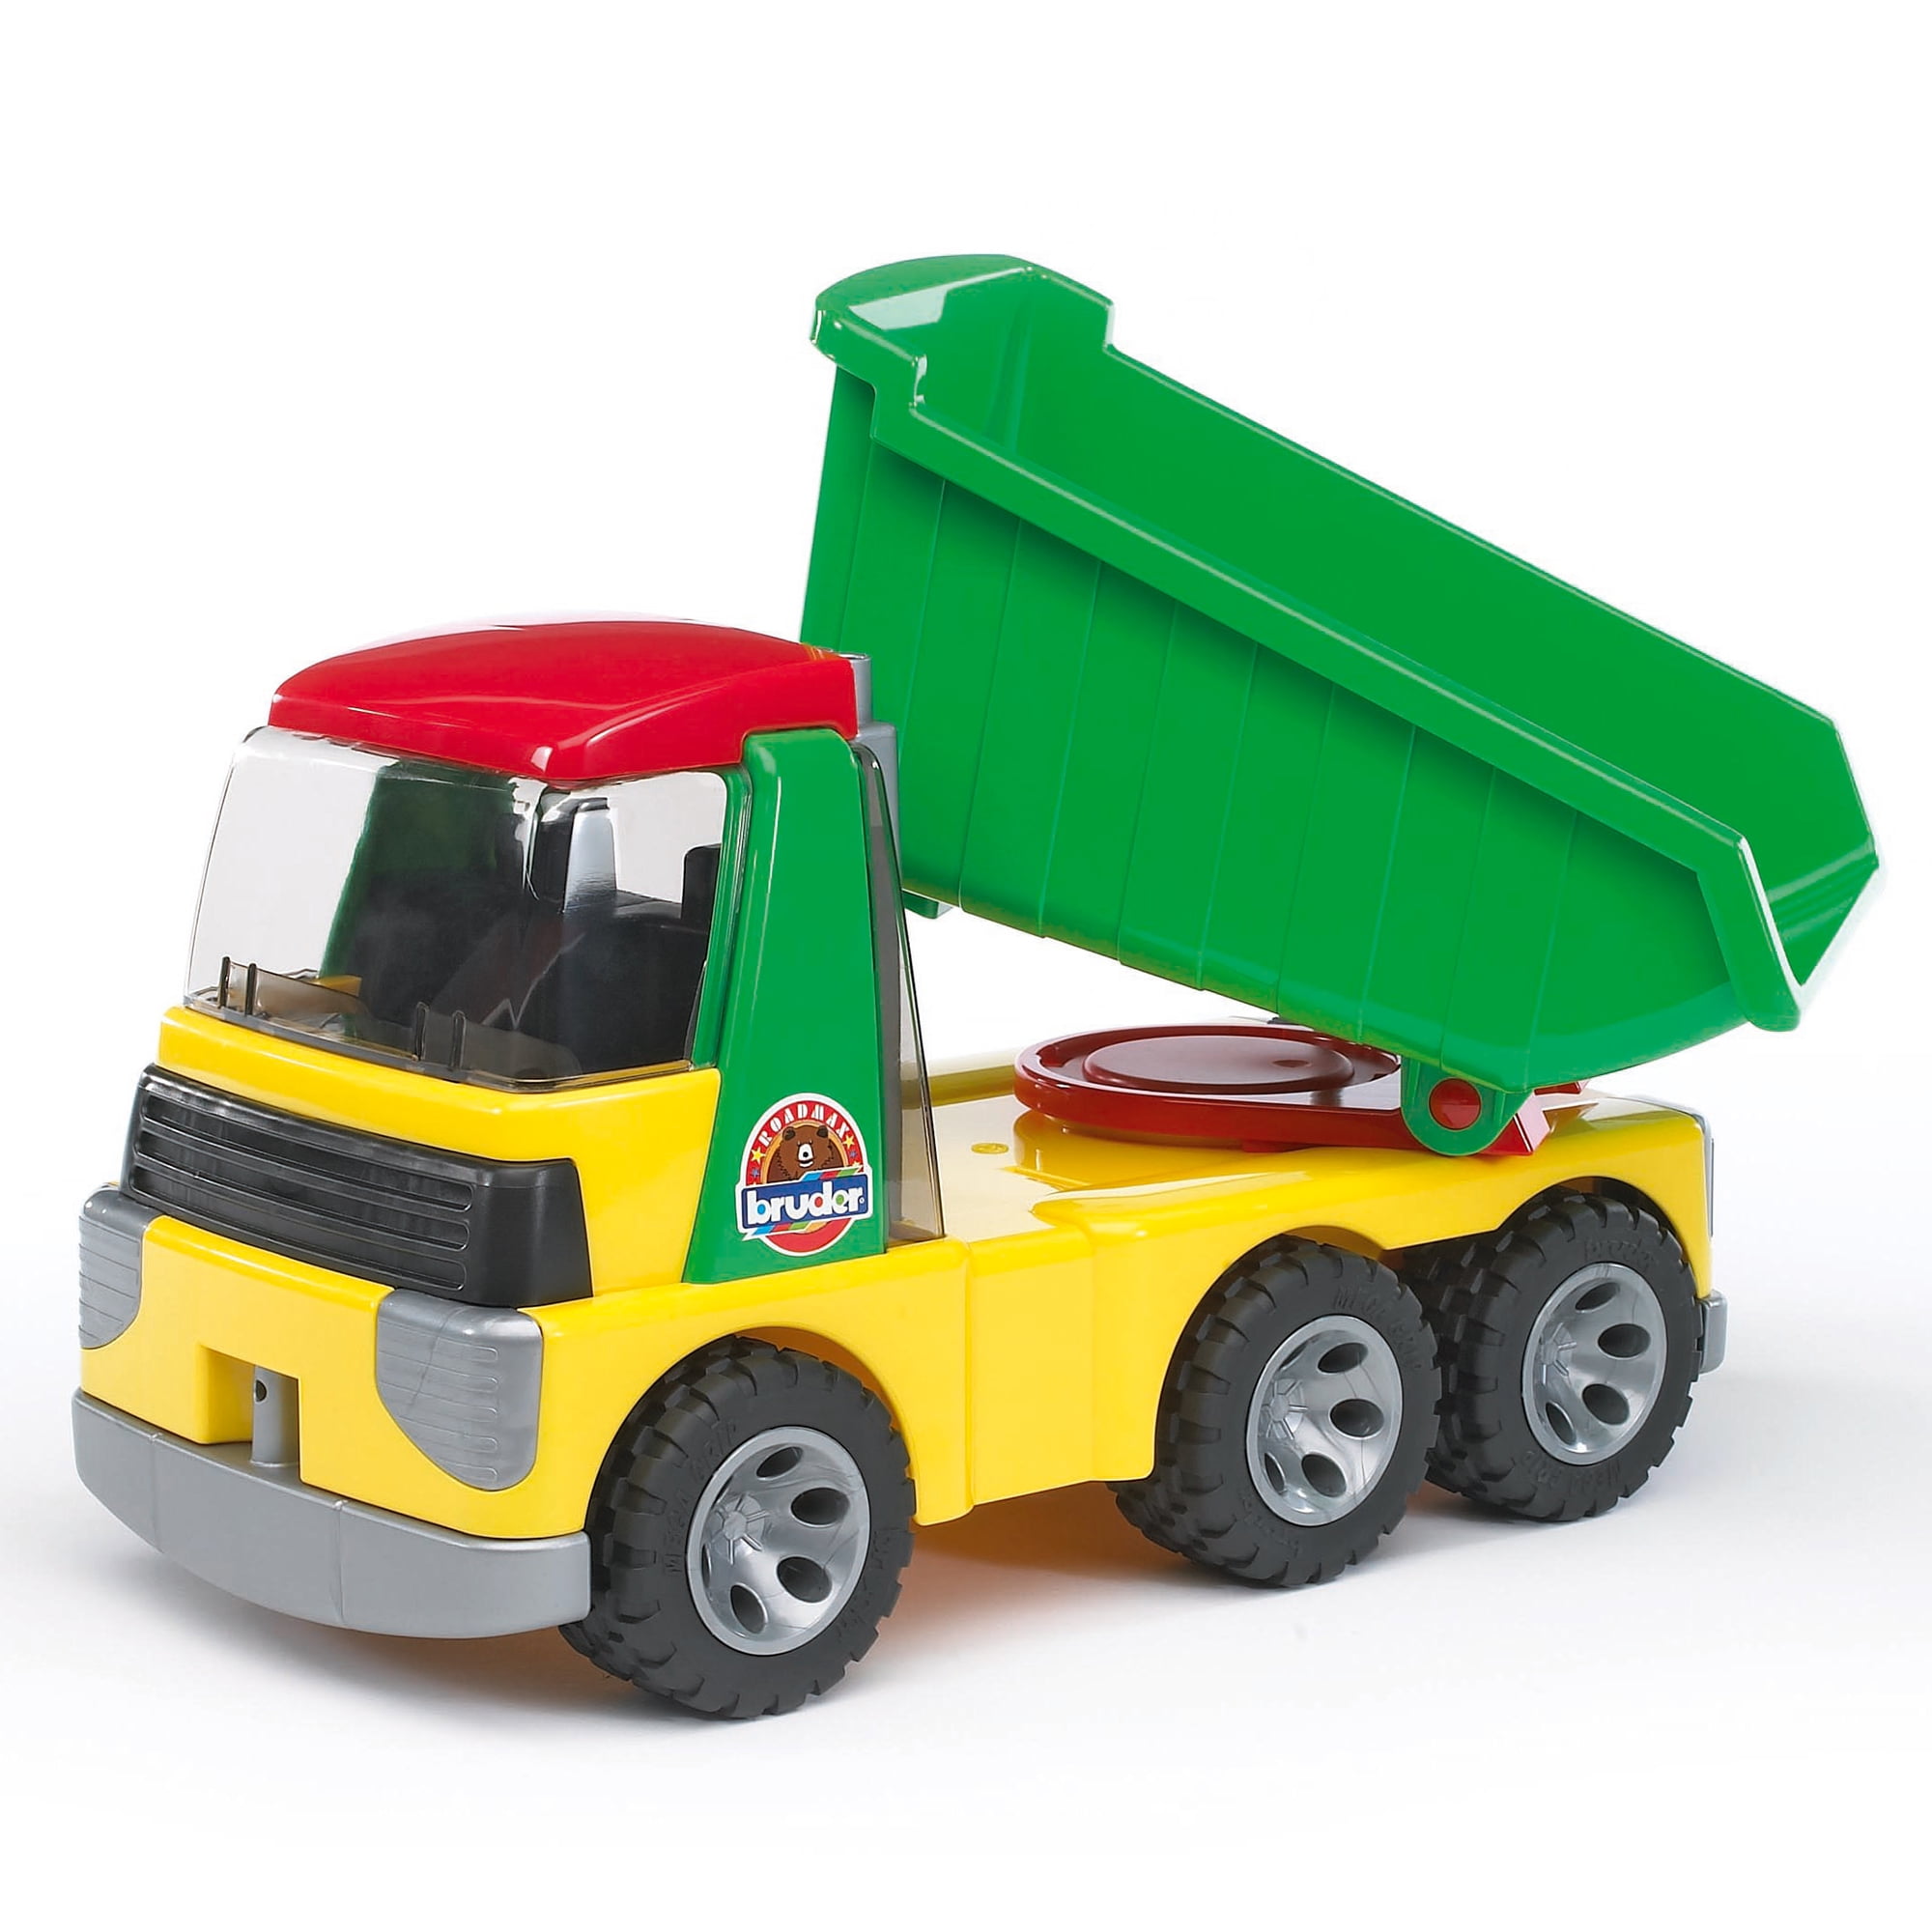 Купить игрушку грузовичок. Bruder Roadmax грузовик. Машинки для детей Брудер. Bruder Roadmax грузовик с погрузчиком. Грузовик Брудер игрушка.